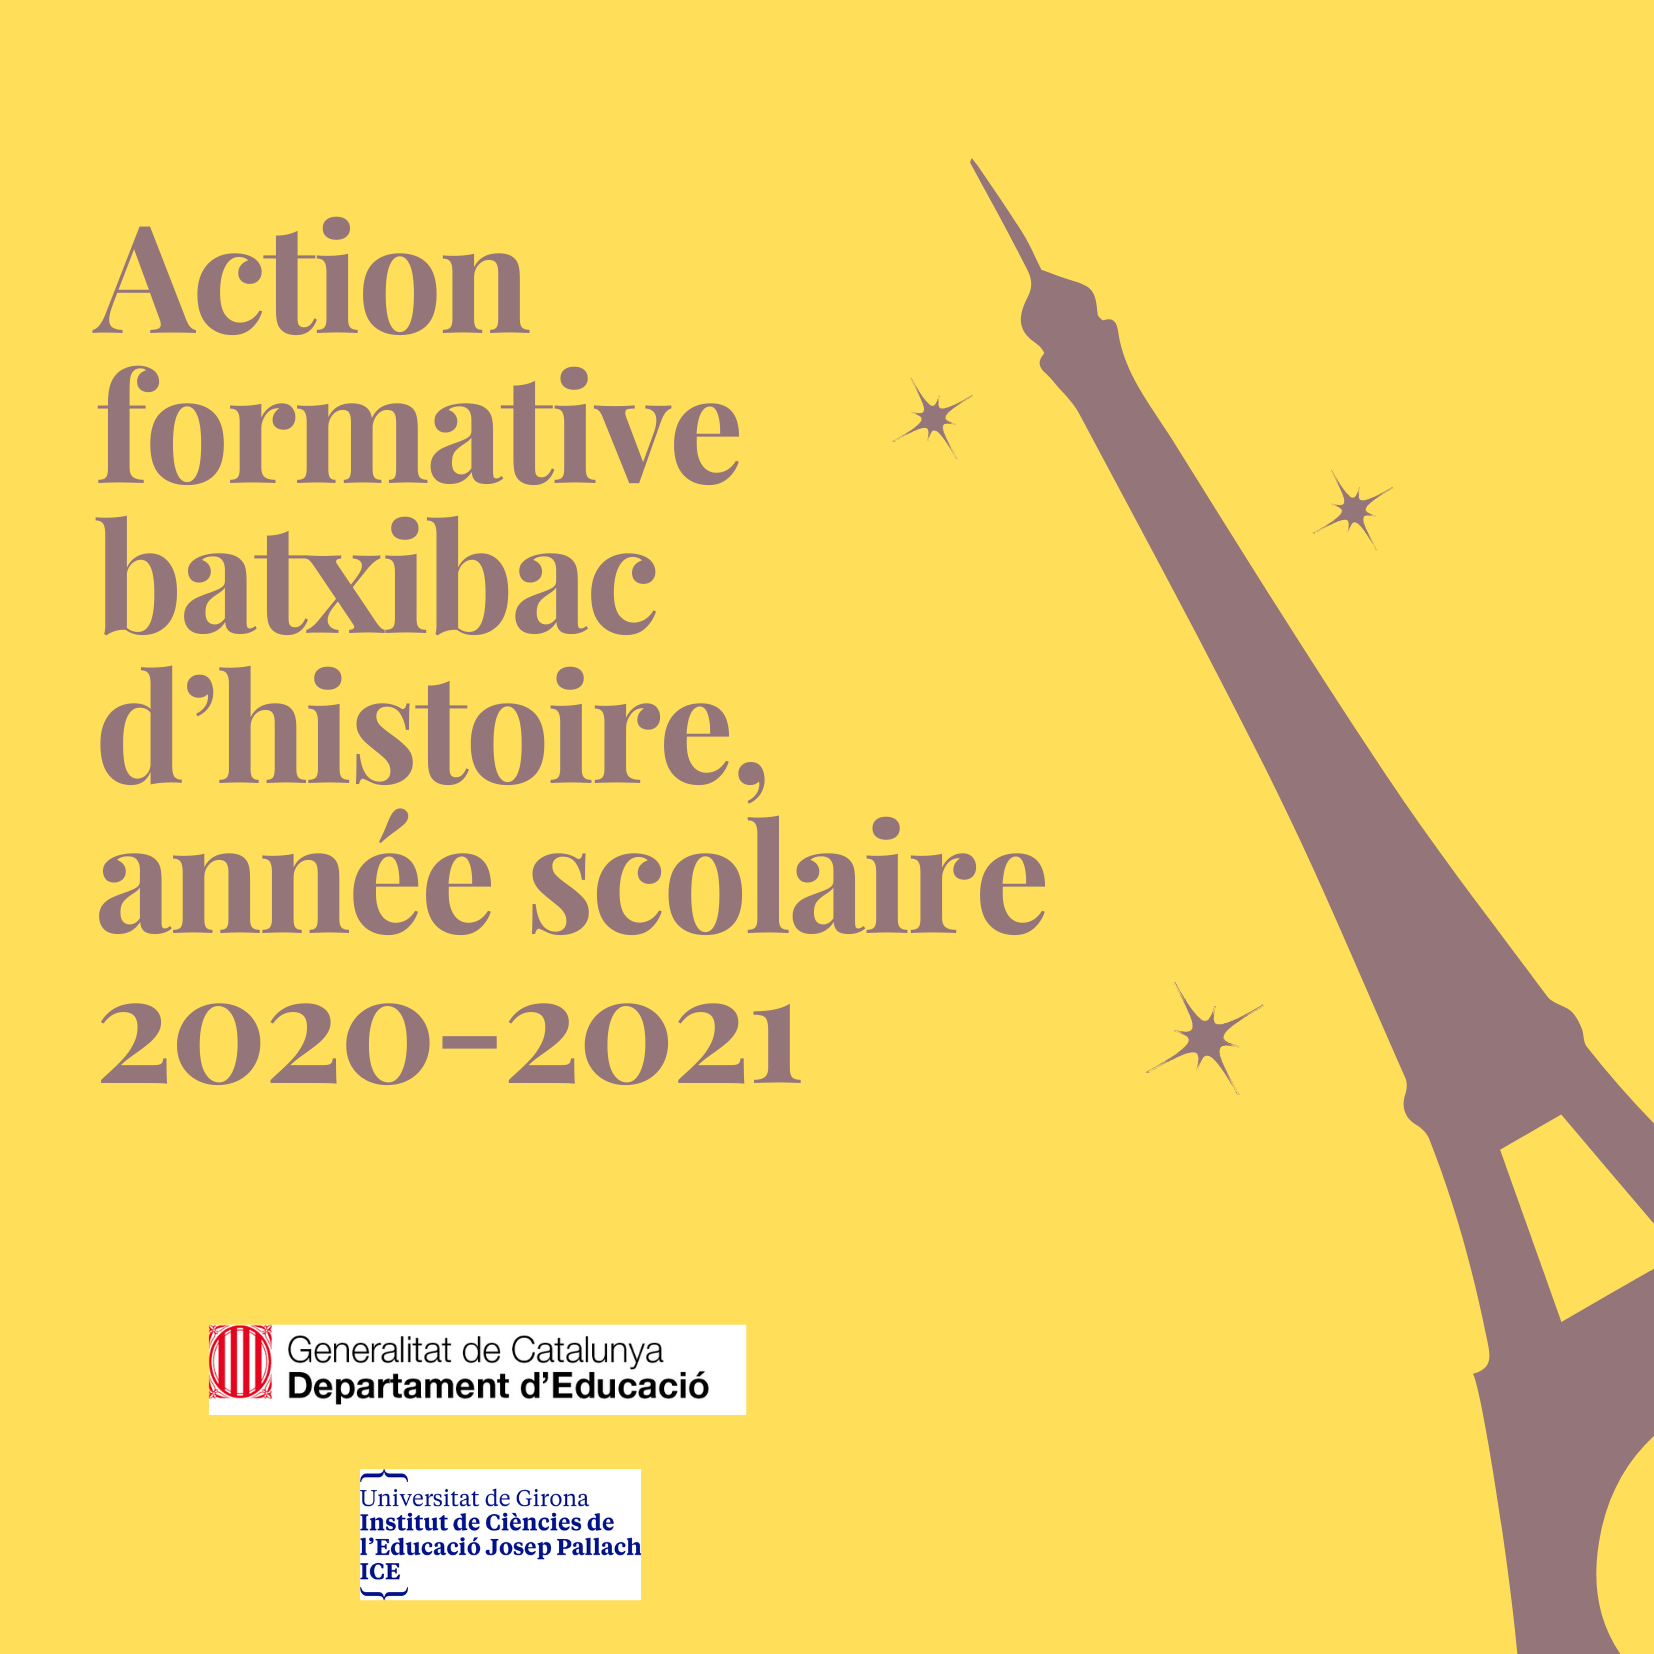 Action formative batxibac d’histoire, année scolaire 2020-2021